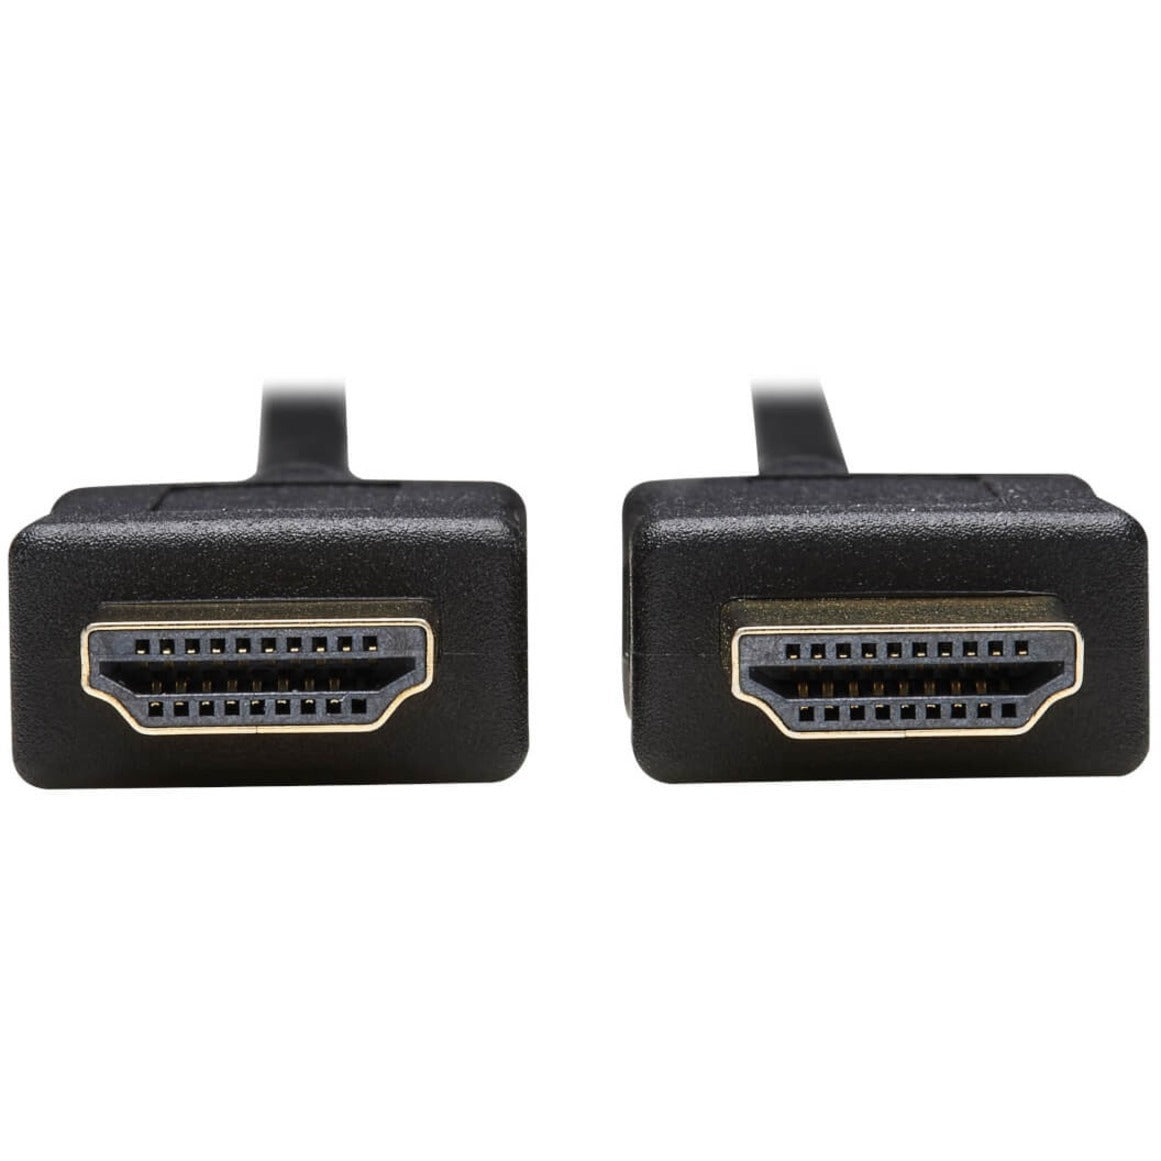 Tripp Lite P782-010-HA HDMI KVM Cable Kit - 4K HDMI, USB 2.0, 3.5 mm Audio, 10 ft., Black